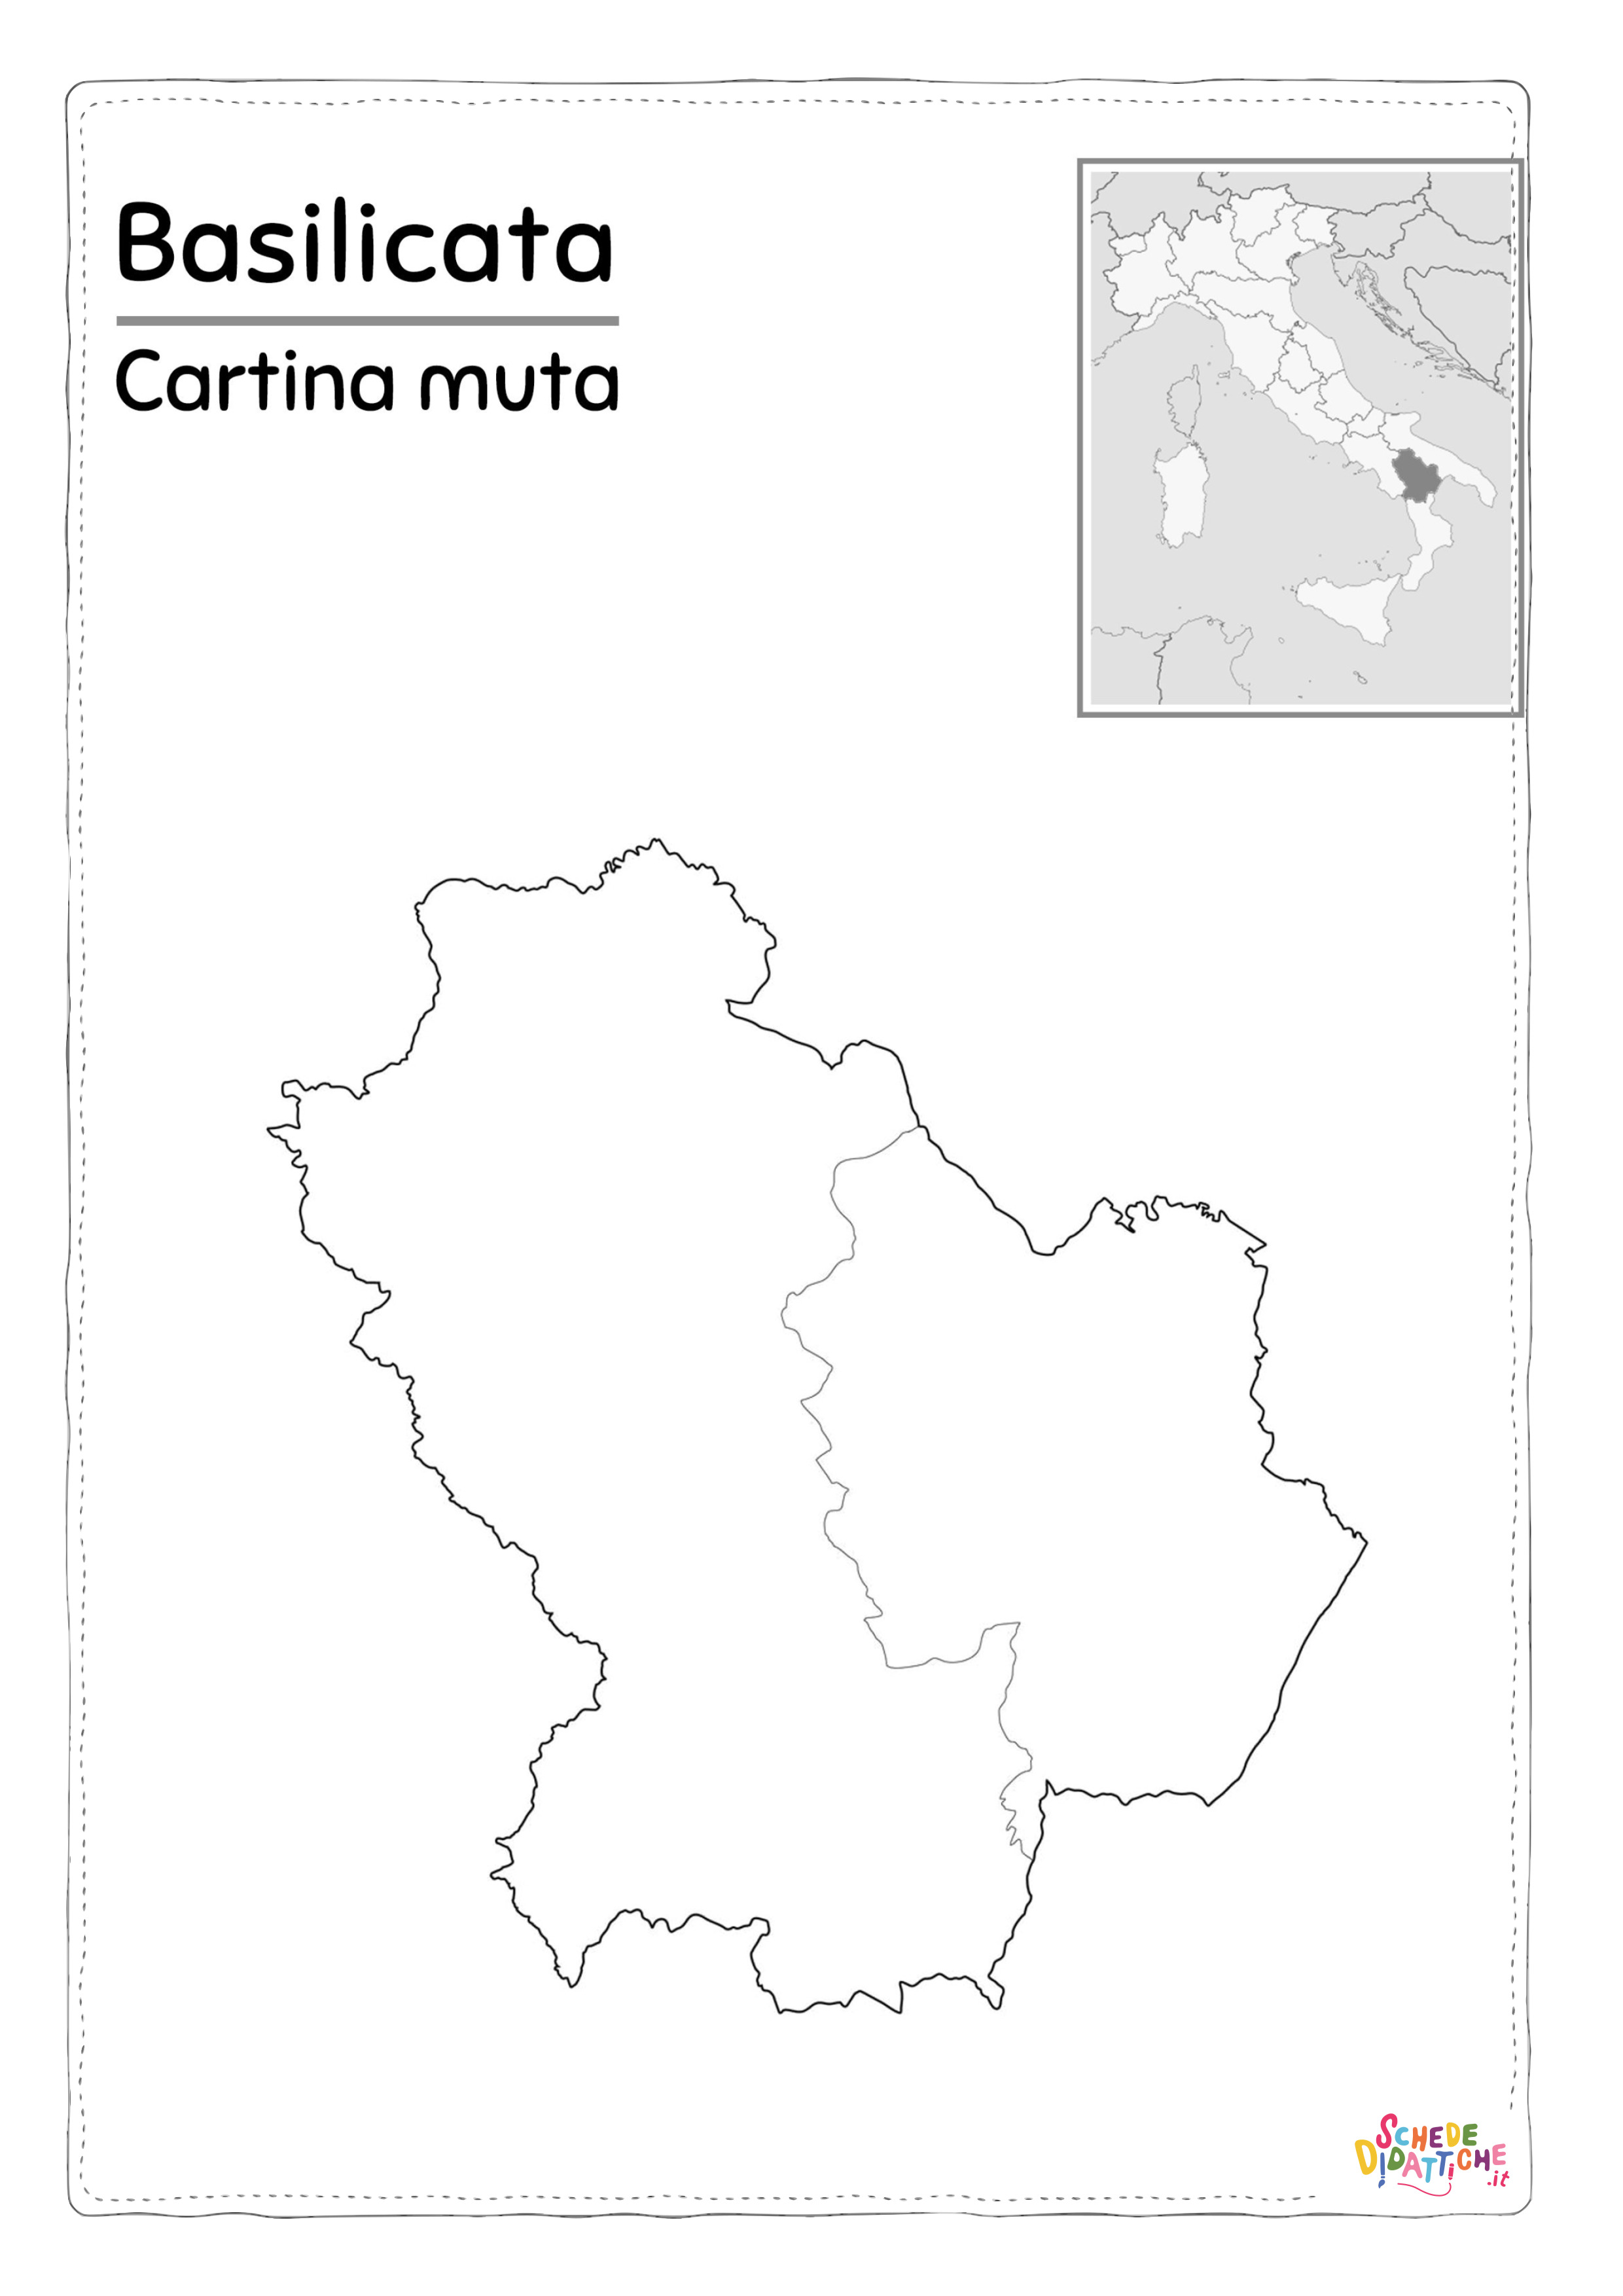 basilicata cartina muta bn